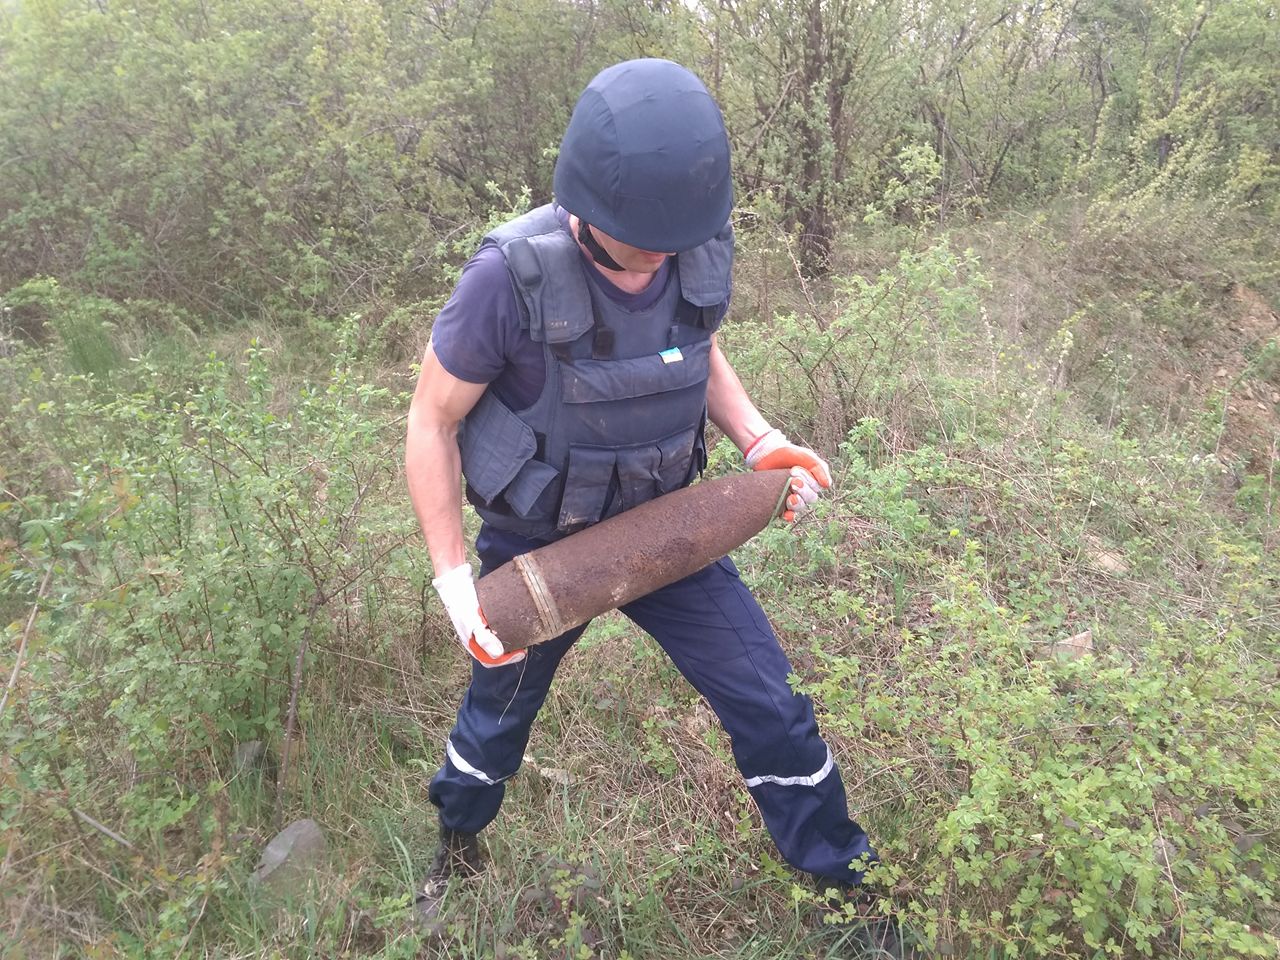 16 травня о 11:24 до Служби порятунку 101 повідомили, що у селі Рокосово, Хустського району, за межами населеного пункту, знайдено металевий предмет, зовні схожий на артилерійський снаряд.

